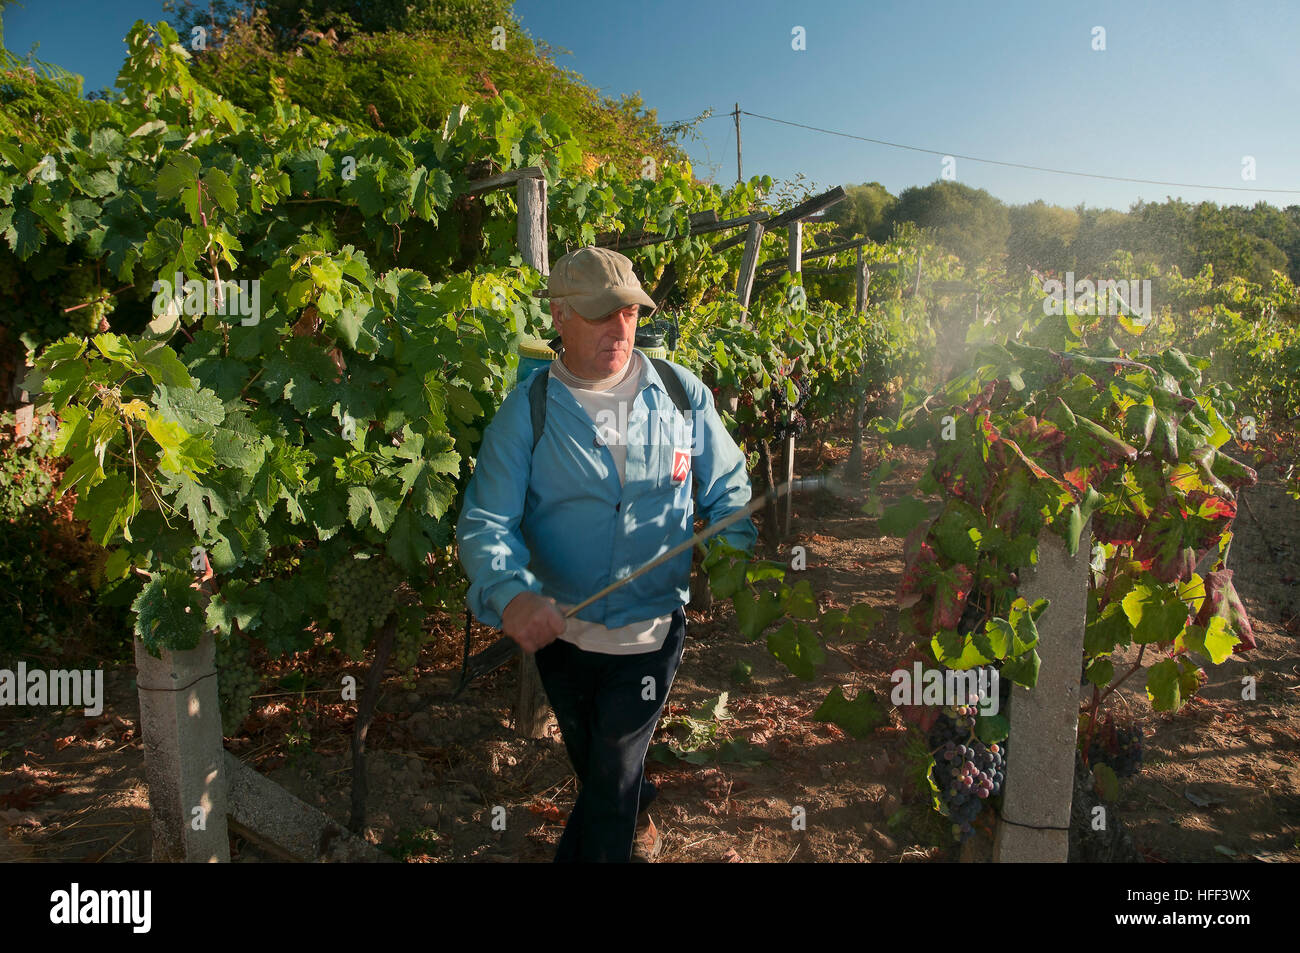 Un agricoltore che lavorano in una vigna, Celanova, provincia di Orense, regione della Galizia, Spagna, Europa Foto Stock